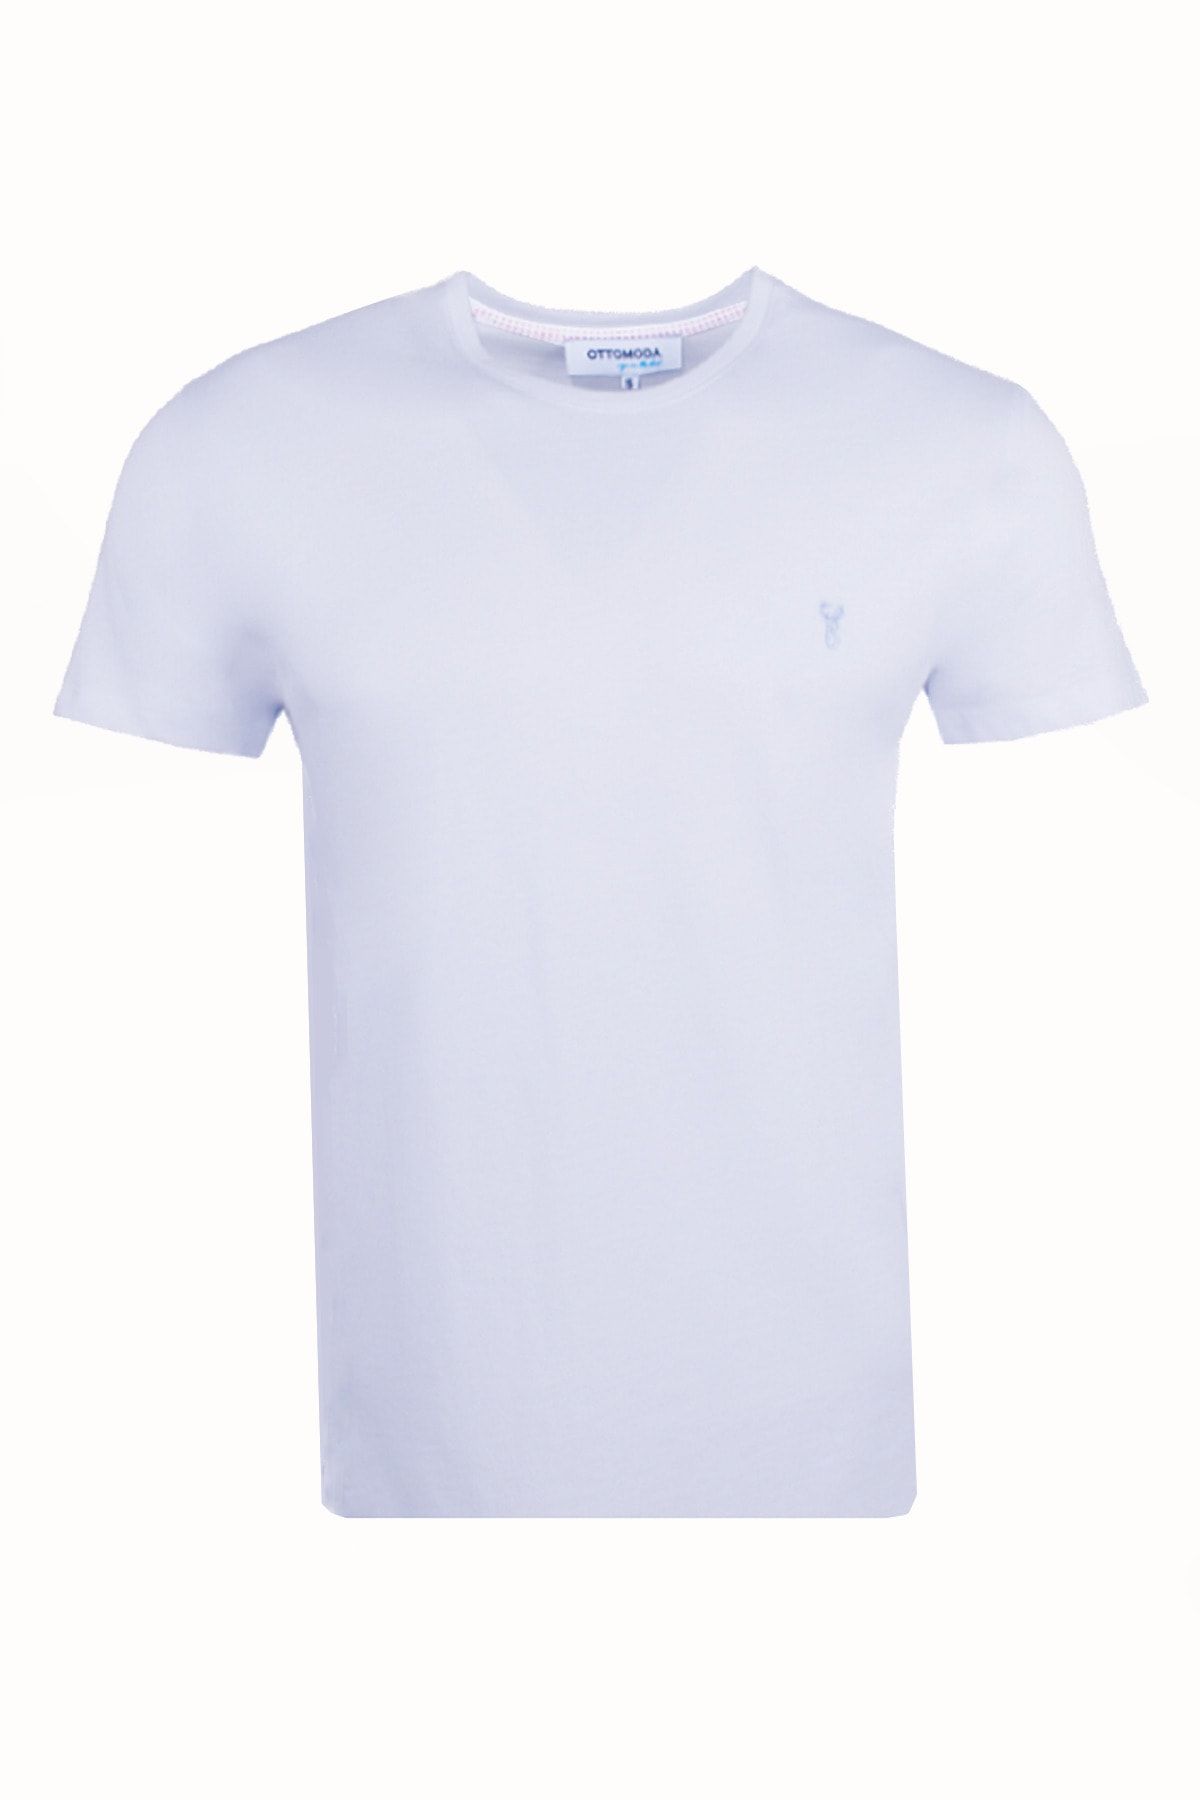 Ottomoda Erkek Beyaz Basic T-shirt